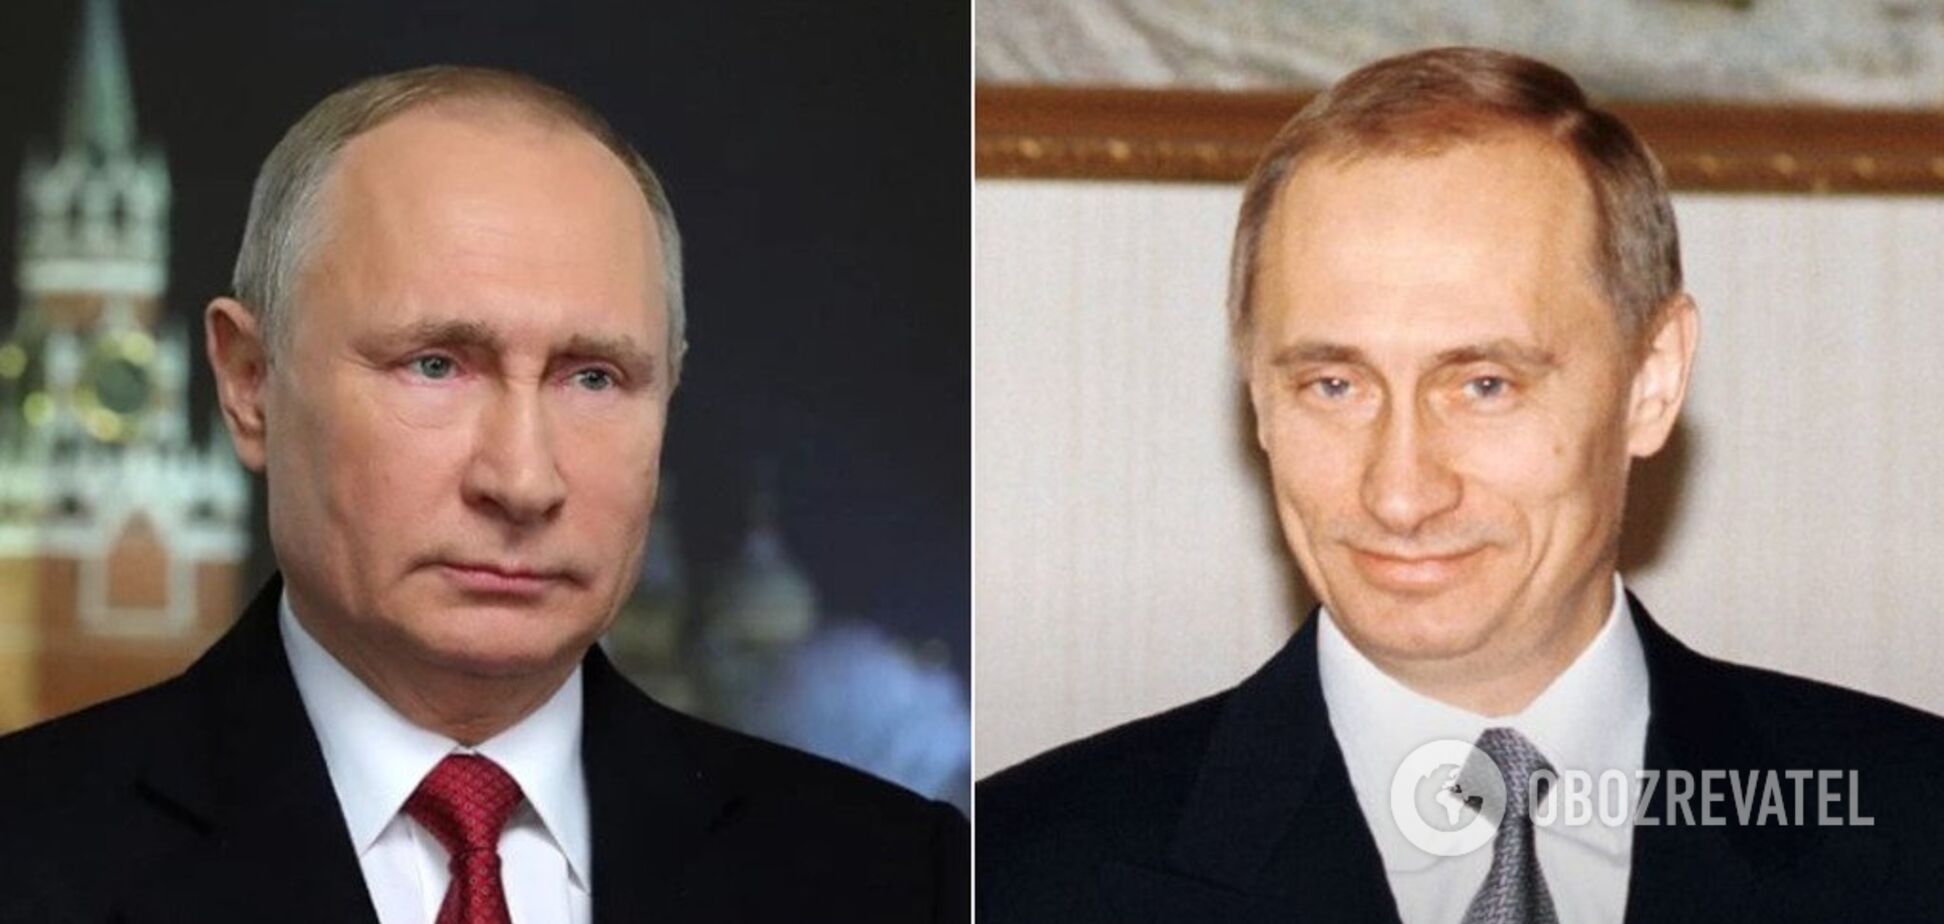 Був худий та без ботокса: як змінився Путін за 20 років при владі в Росії